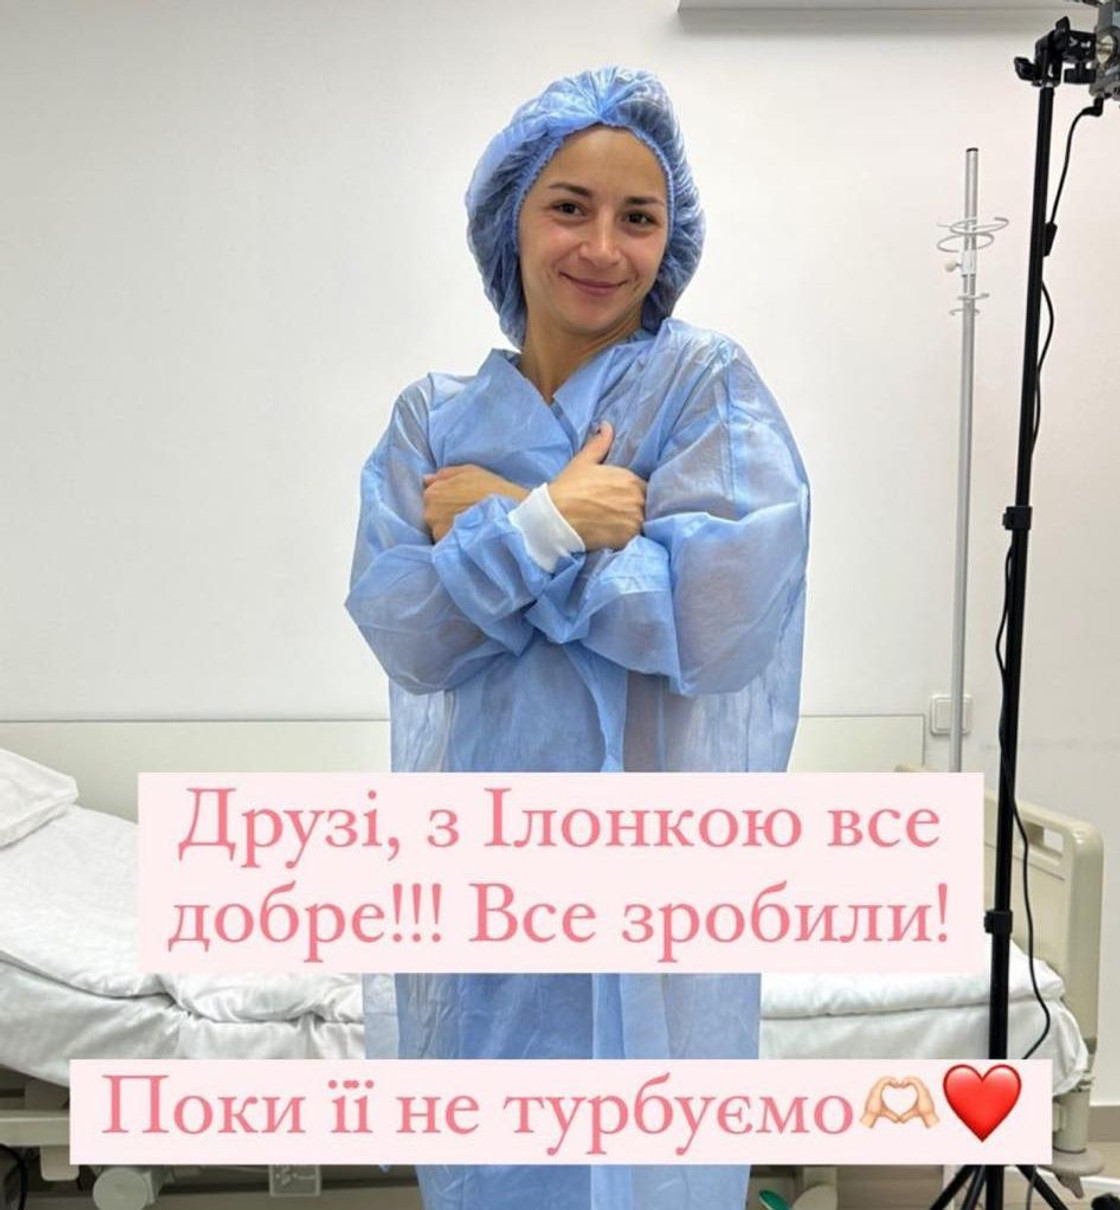 Про бажання збільшити груди Гвоздьова повідомила за місяць до операції 